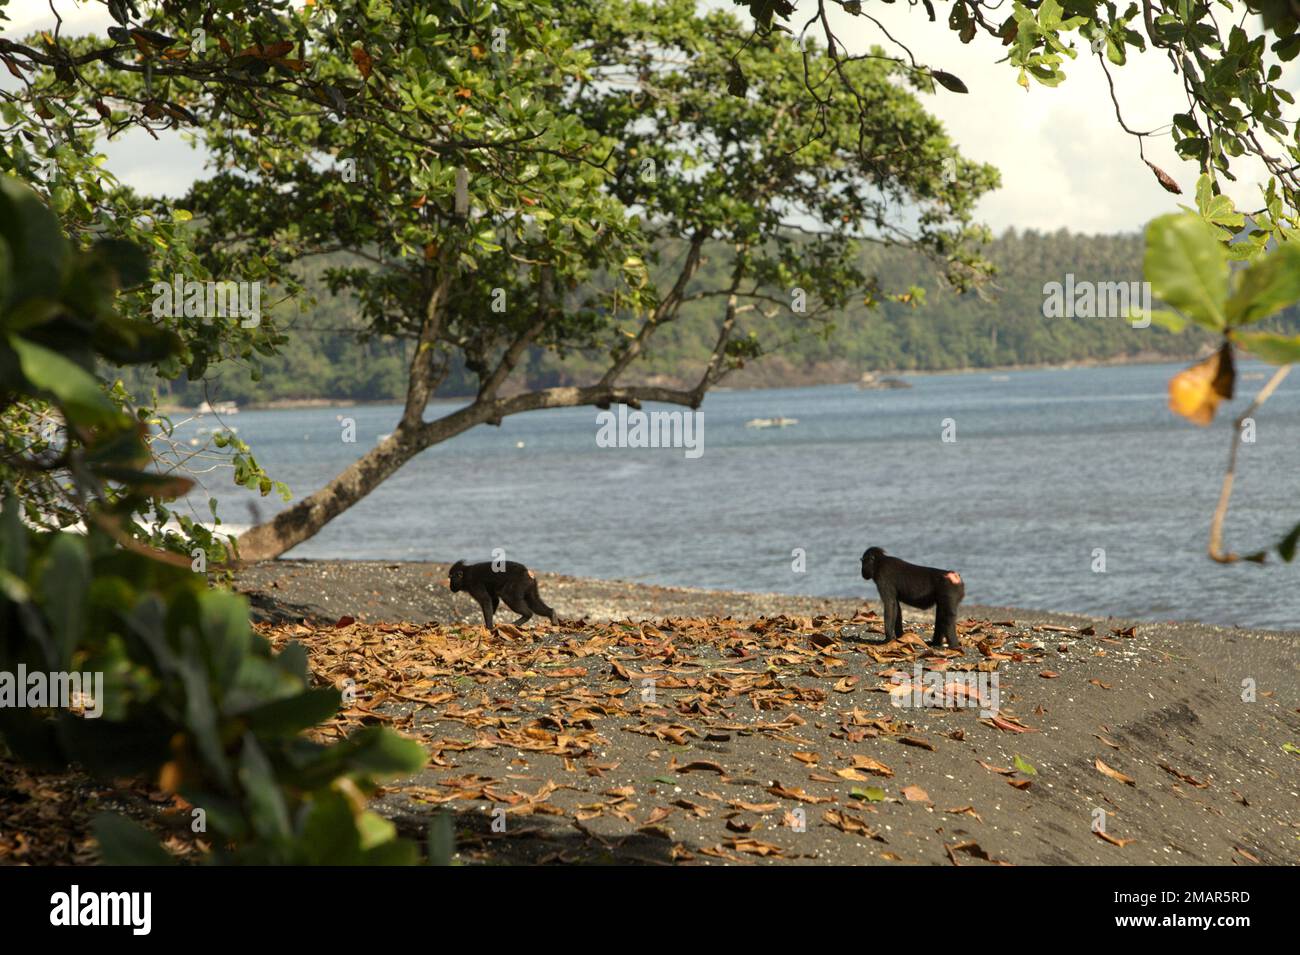 Sulawesi Schwarzkammmakaken (Macaca nigra) wandern an einem Strand in ihrem natürlichen, geschützten Lebensraum im Naturschutzgebiet Tangkoko, North Sulawesi, Indonesien. Der natürliche Lebensraum dieser geschützten Art ist ein Tieflandwald, der sich nach Angaben von Primaten-Wissenschaftlern vom Meeresspiegel bis zu einer Höhe von etwa 1.300 Metern erstreckt. Stockfoto